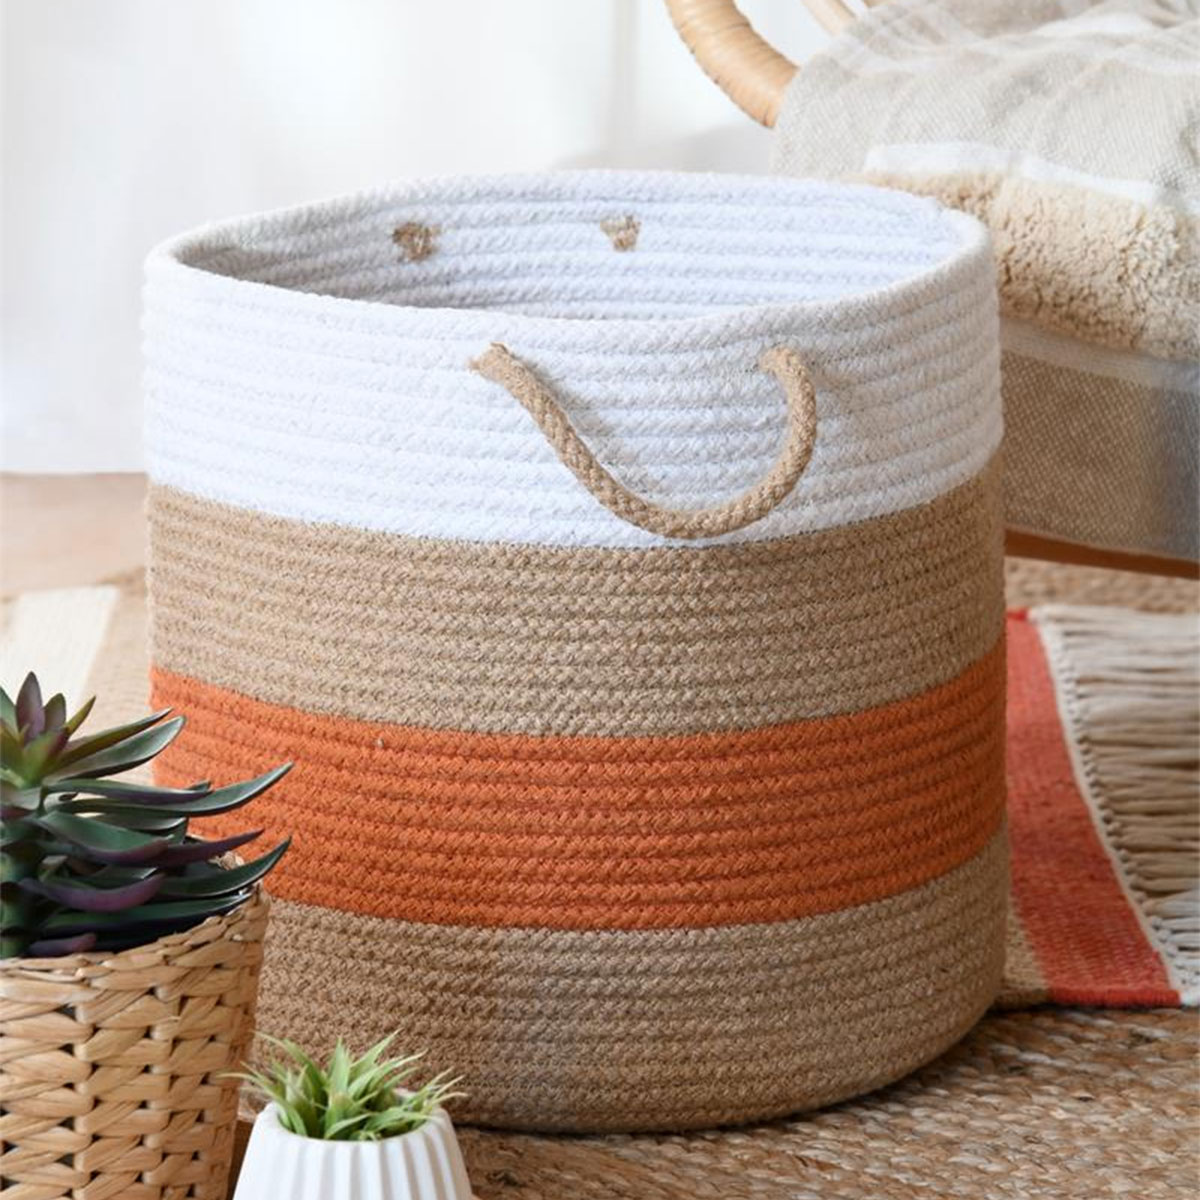 Cotton basket 30 cm